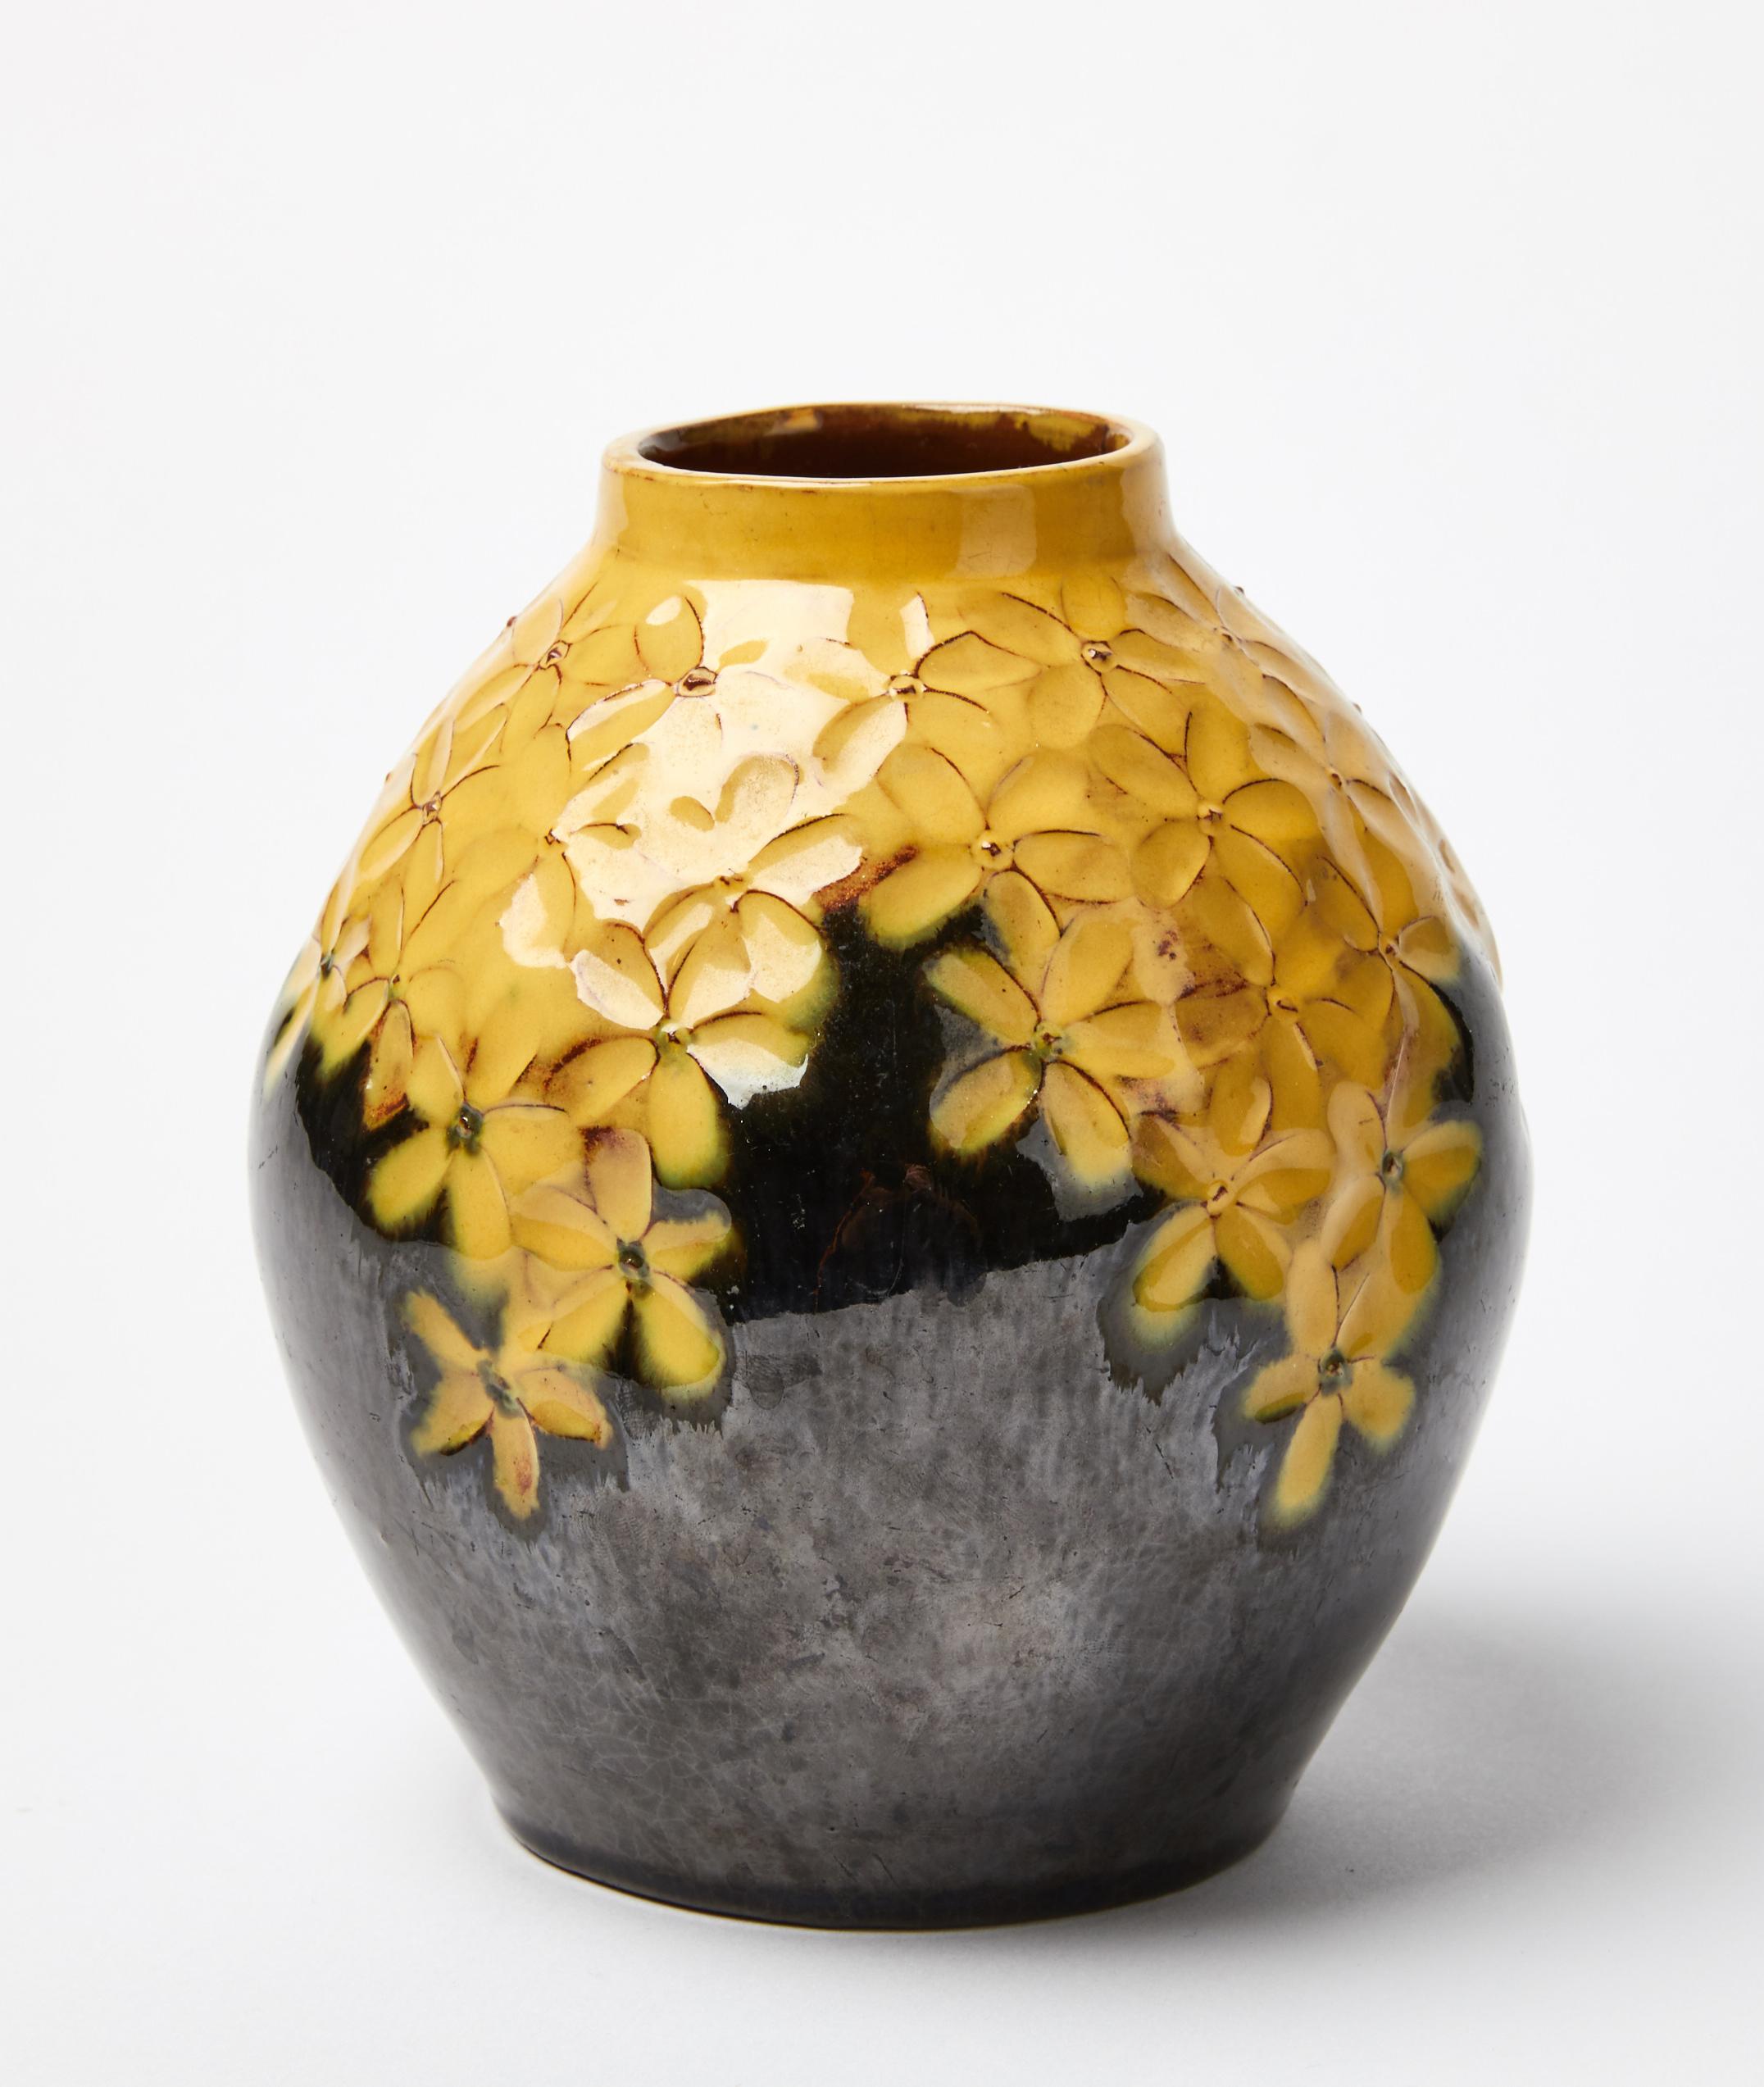 Wir stellen eine sehr seltene und bezaubernde gelbe Blumenvase in unregelmäßiger Form von Hilma Persson Hjelm, Schweden, vor. Es verkörpert die Essenz zeitloser Eleganz und ist eine perfekte Mischung aus künstlerischer Tradition und Design. Diese